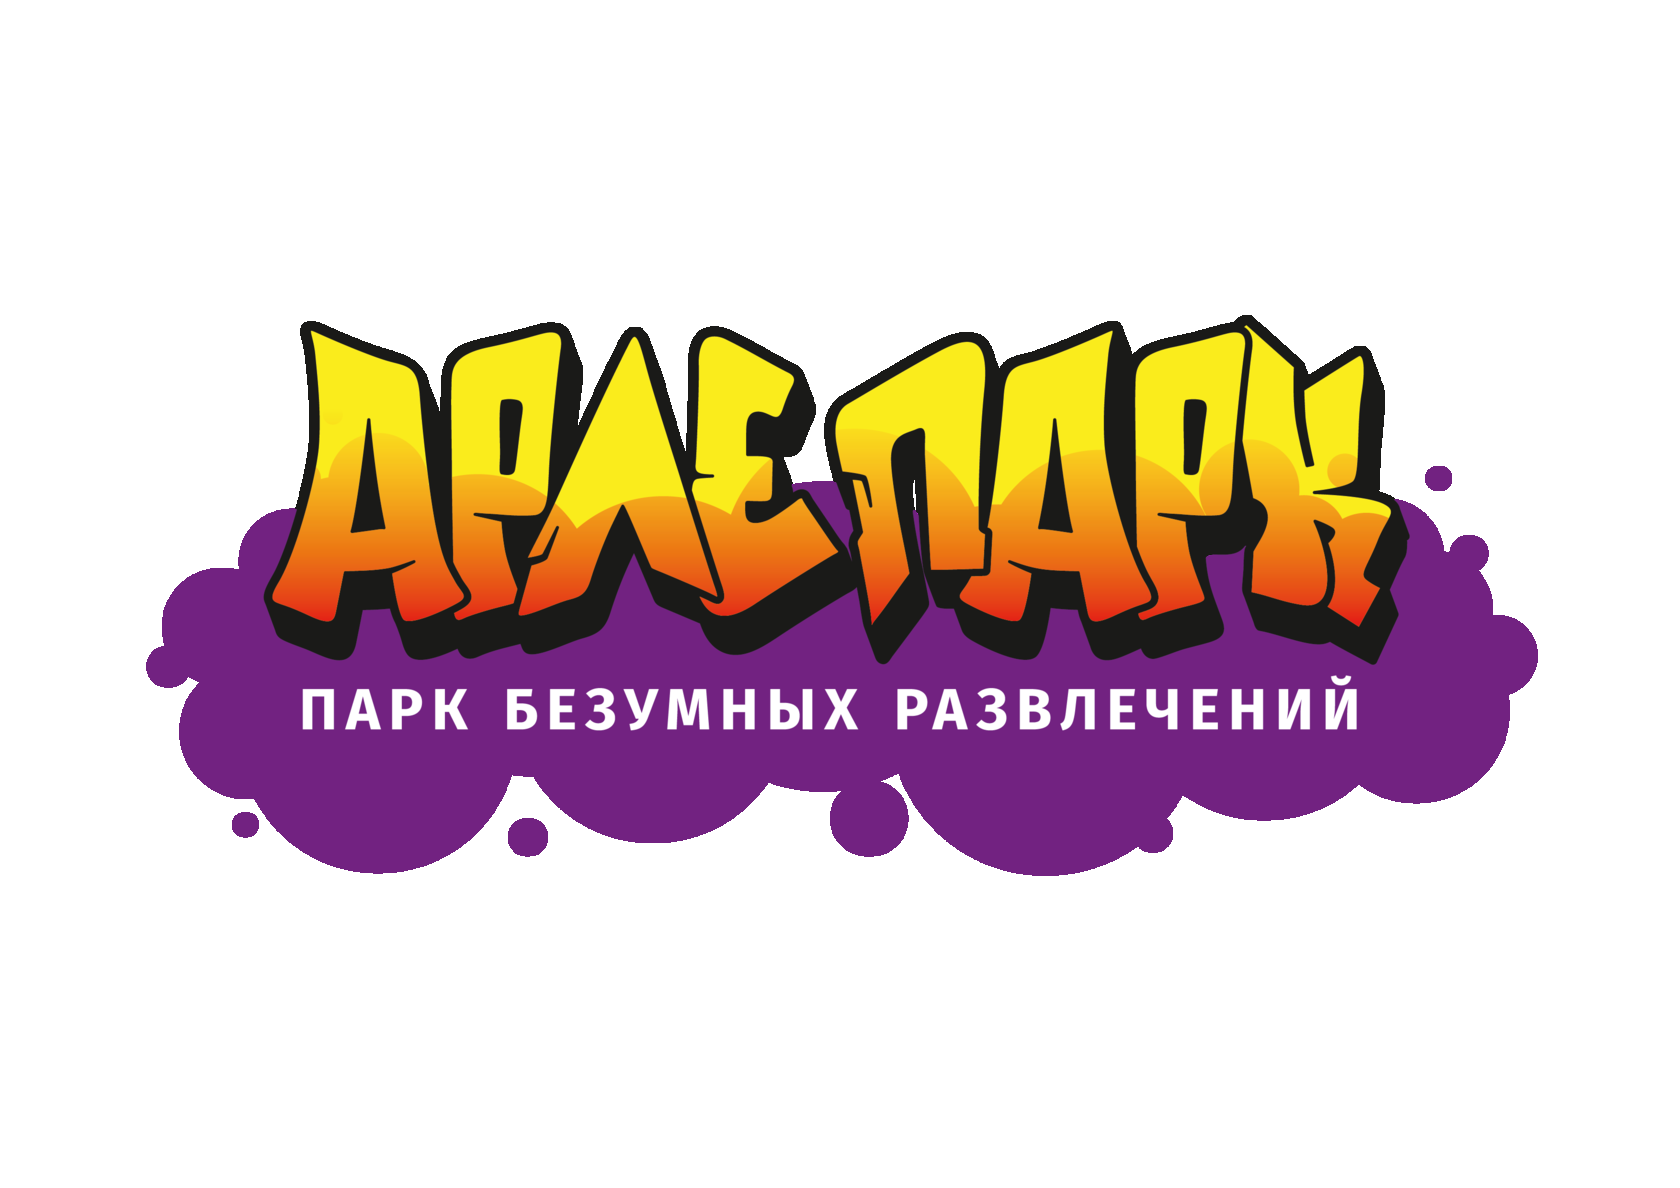 Арлепарк - парк безумных развлечений в Калиниграде